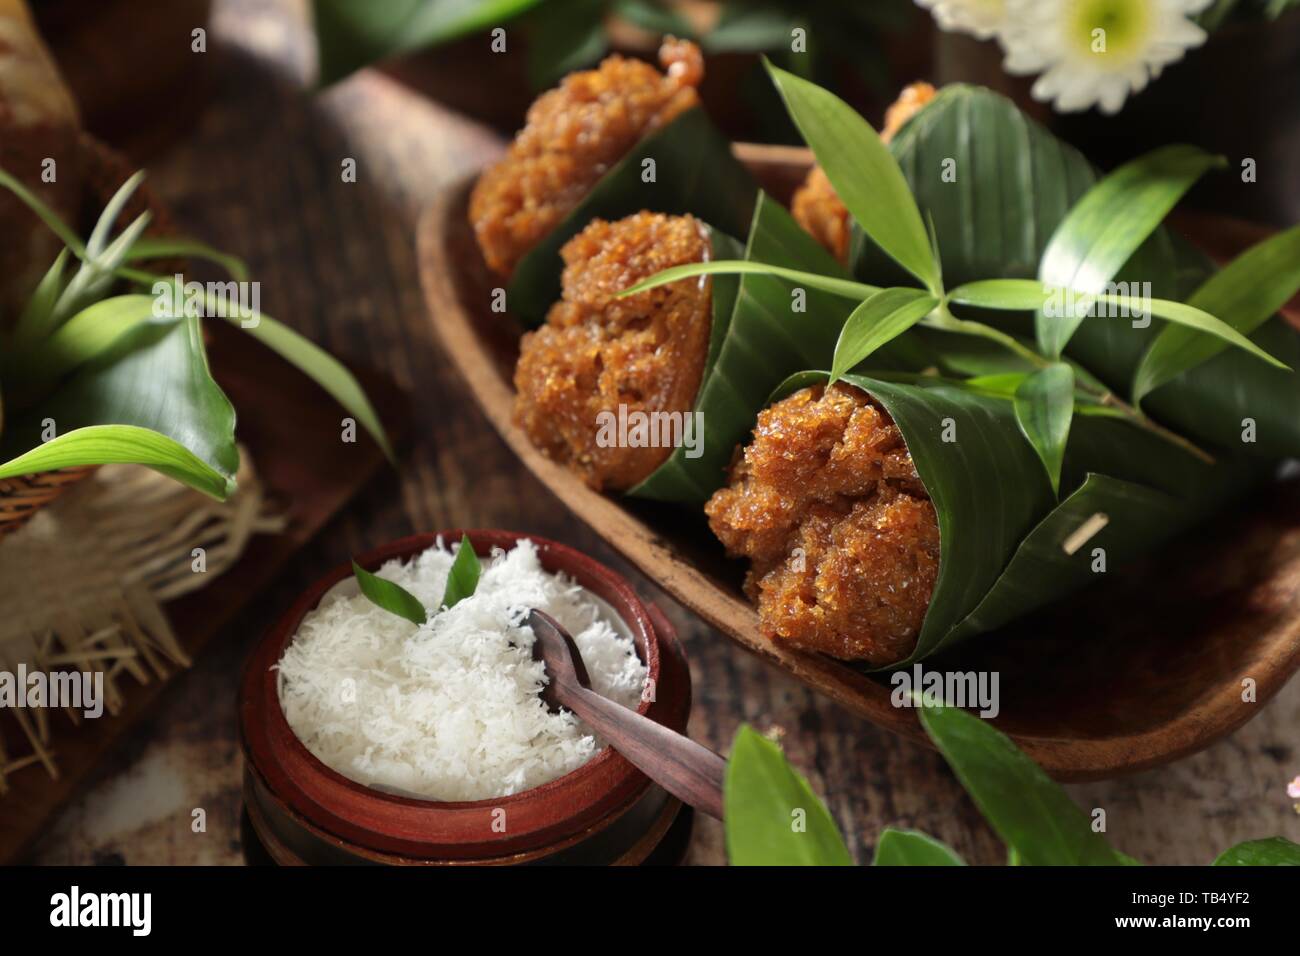 Kue Mangkok Gula Merah. Indonesiano tortini al vapore aromatizzato con noce di cocco marrone zucchero palm. Foto Stock